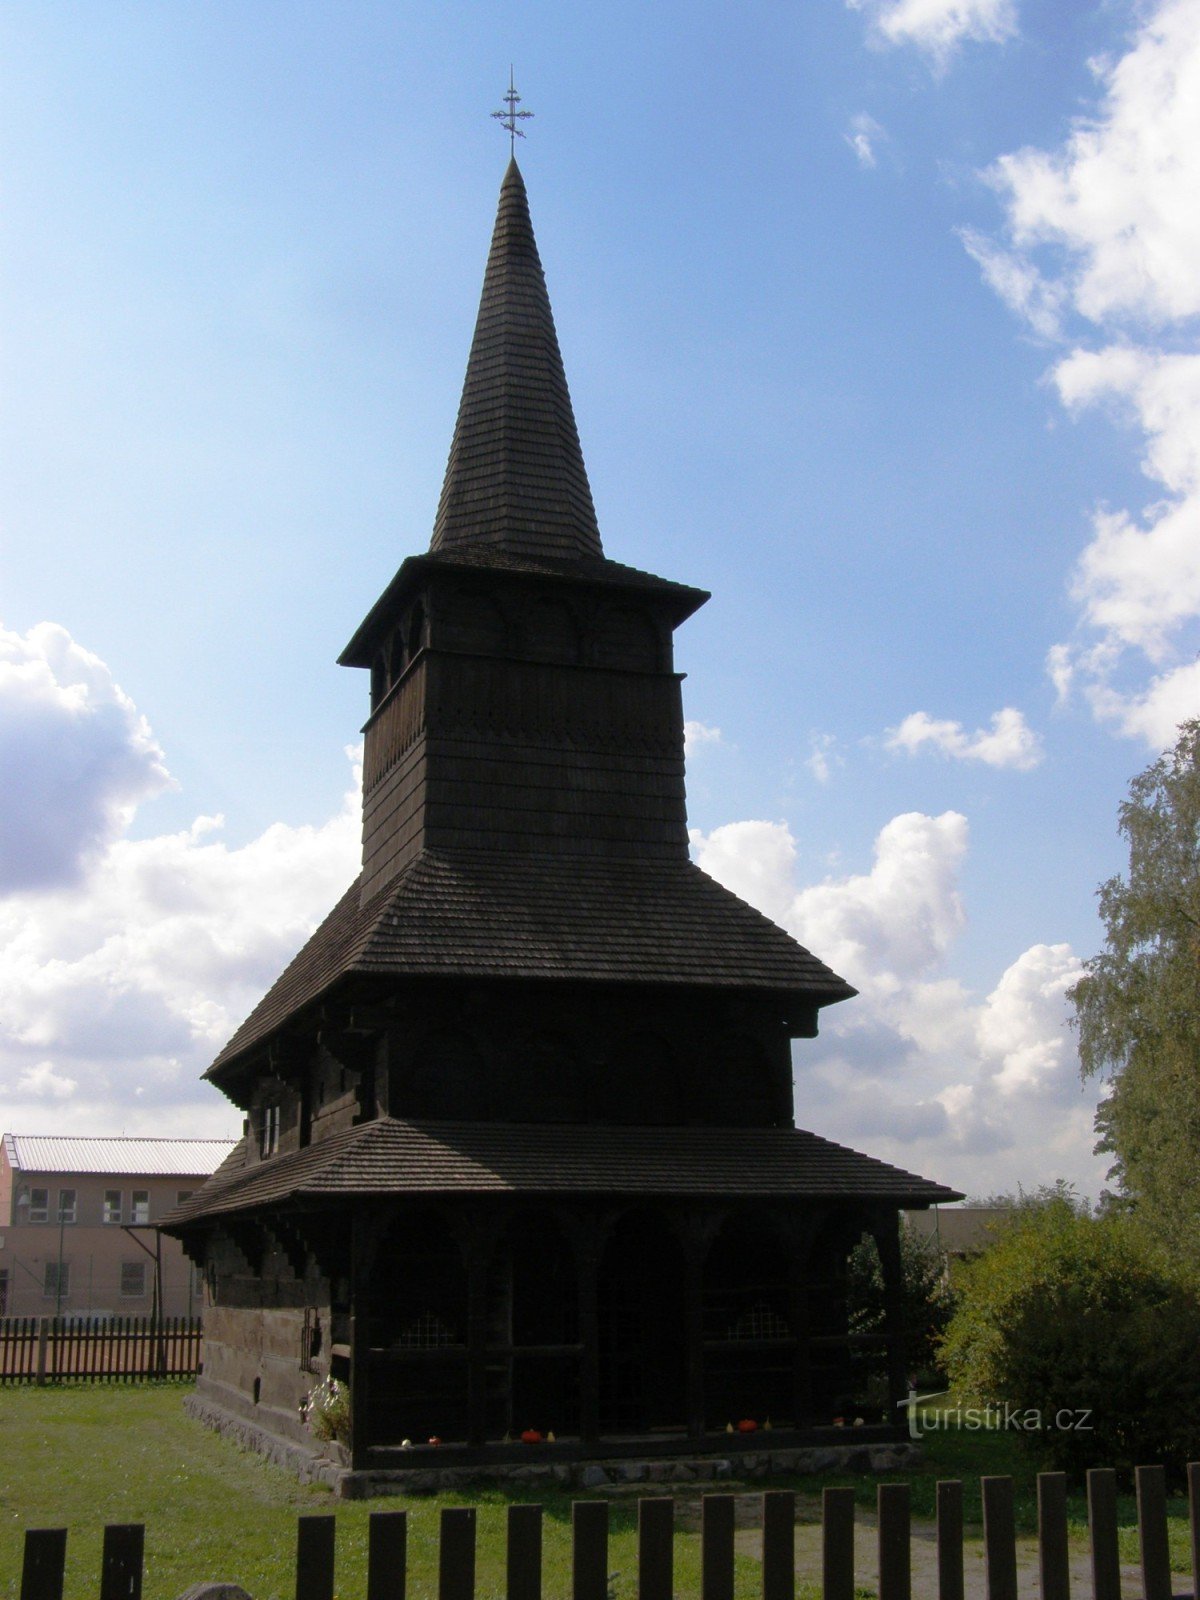 Dobříkov - igreja de madeira de Todos os Santos